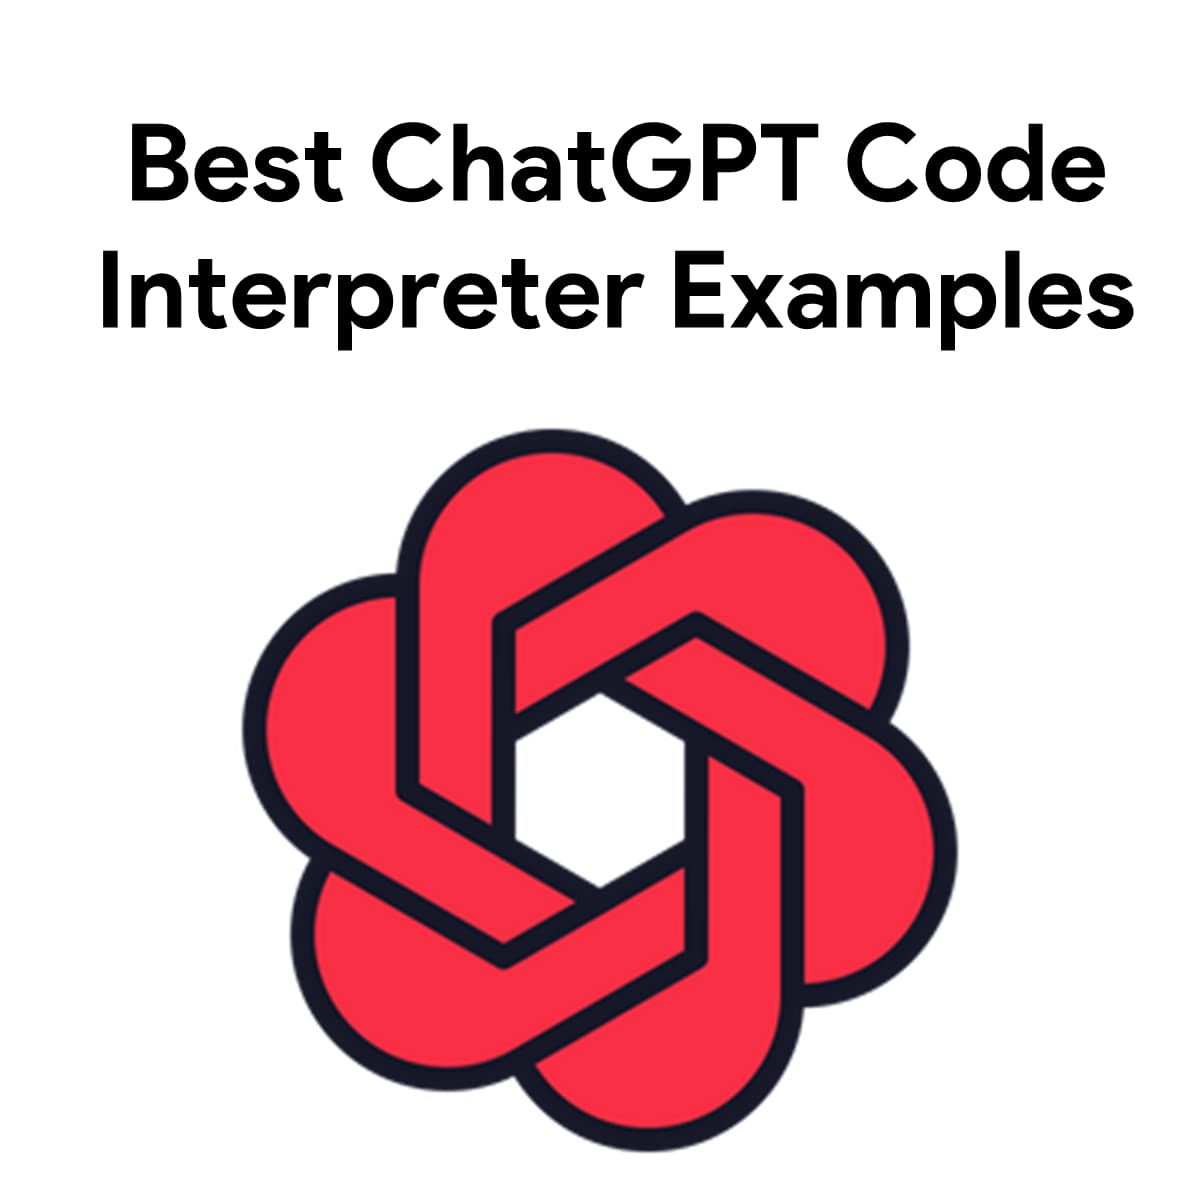 Best ChatGPT Code Interpreter Examples